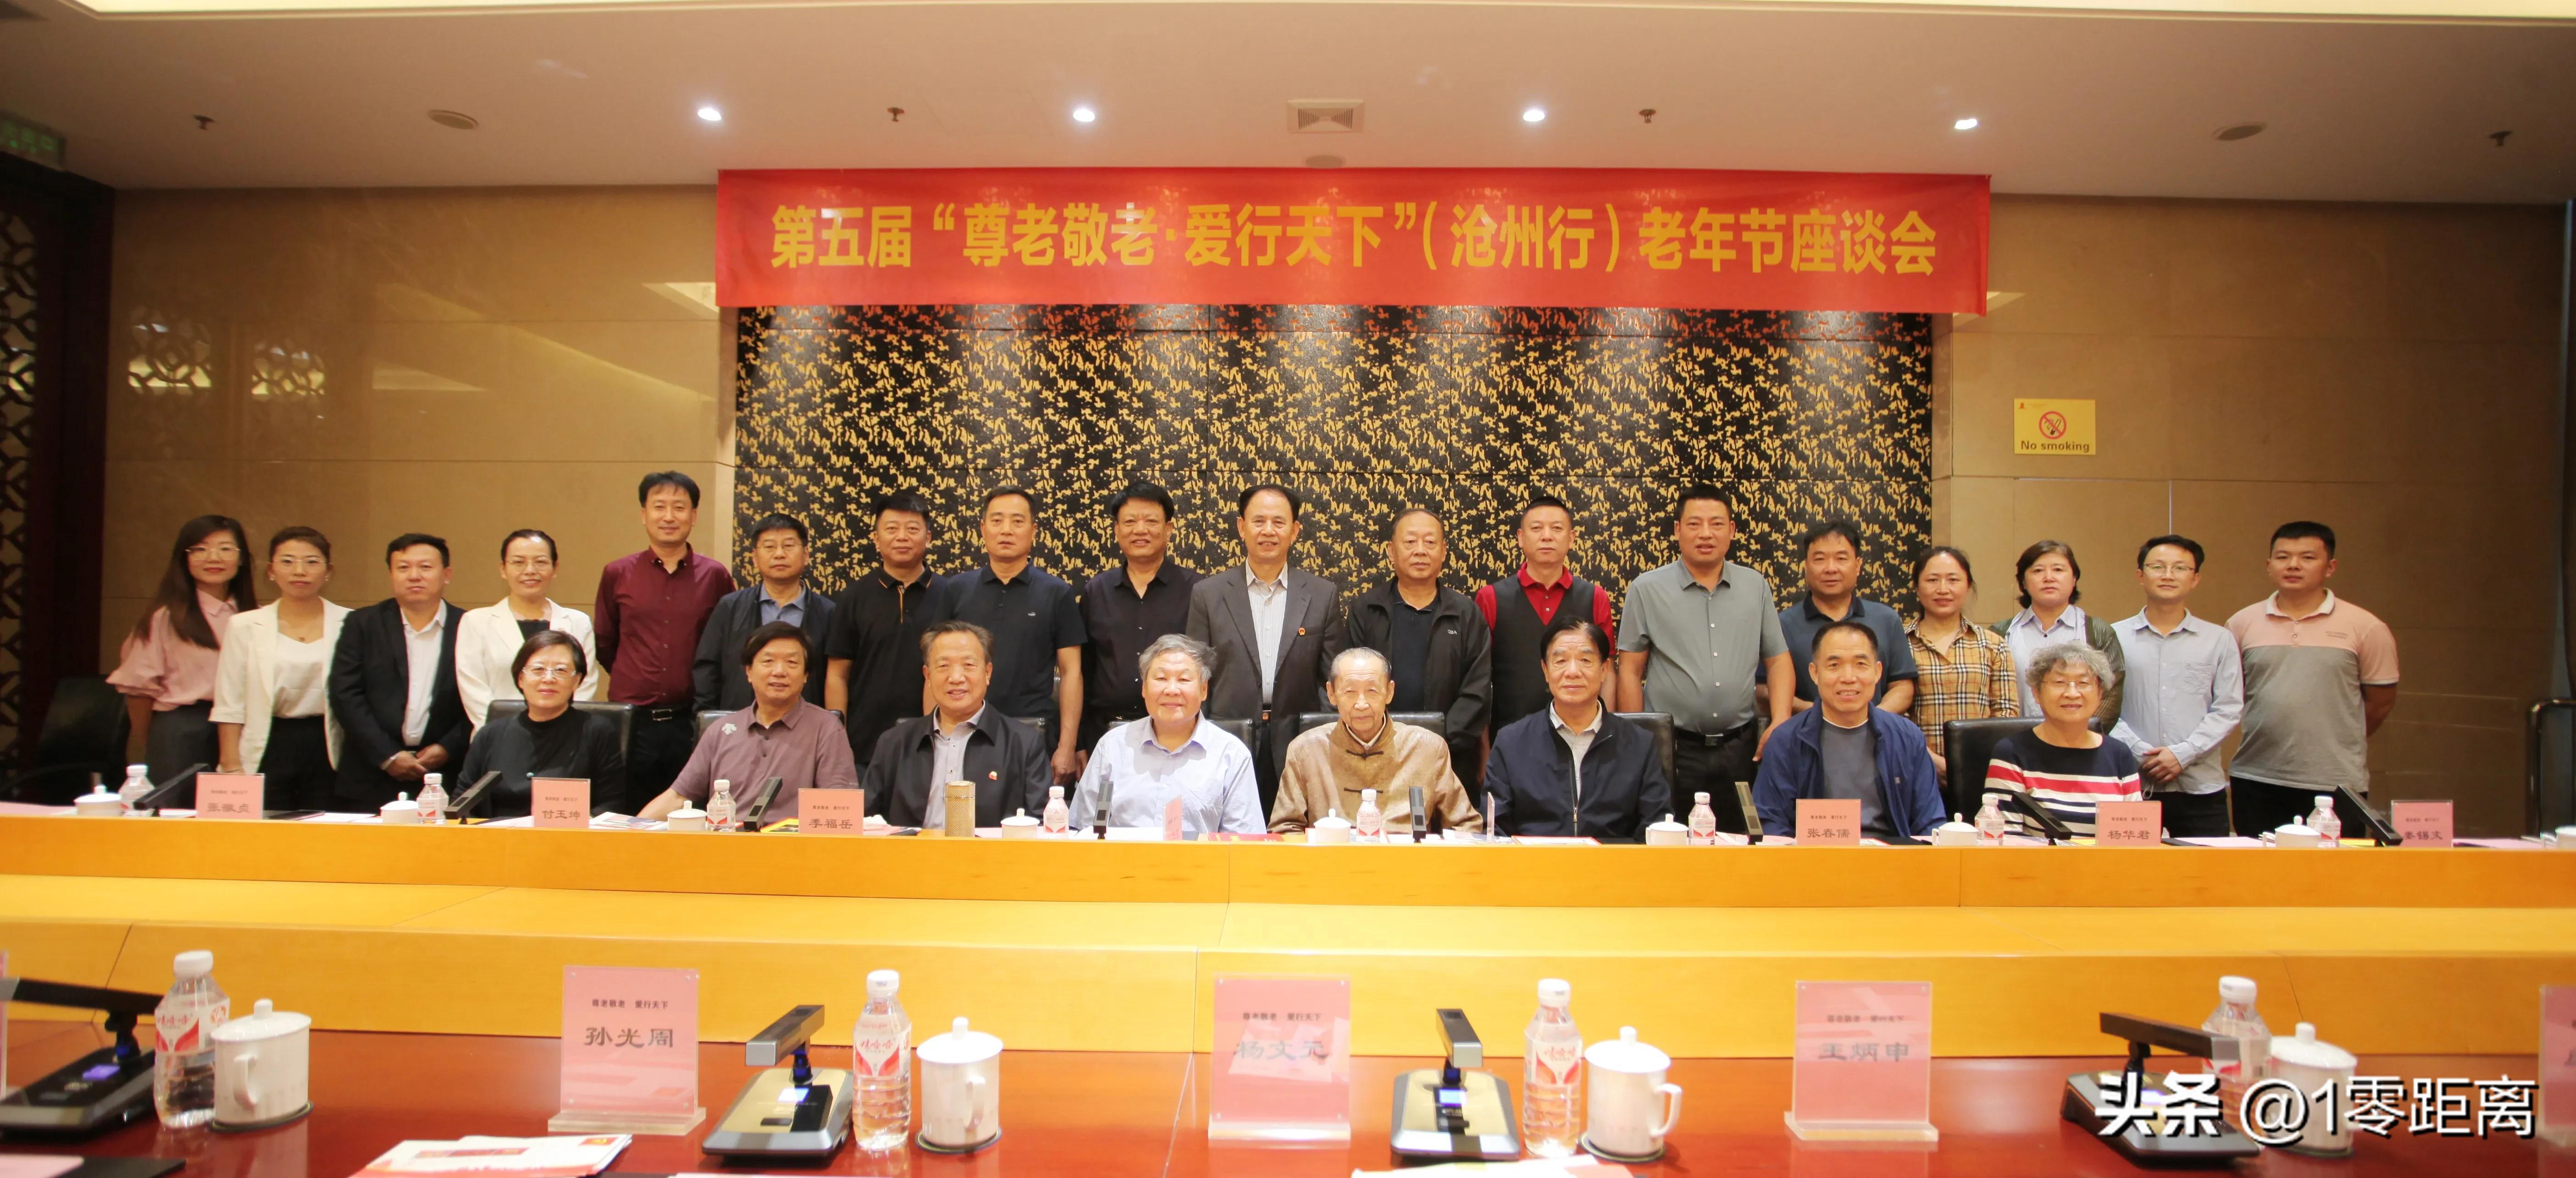 第五届“尊老敬老·爱行天下”老年节座谈会在河北沧州举行